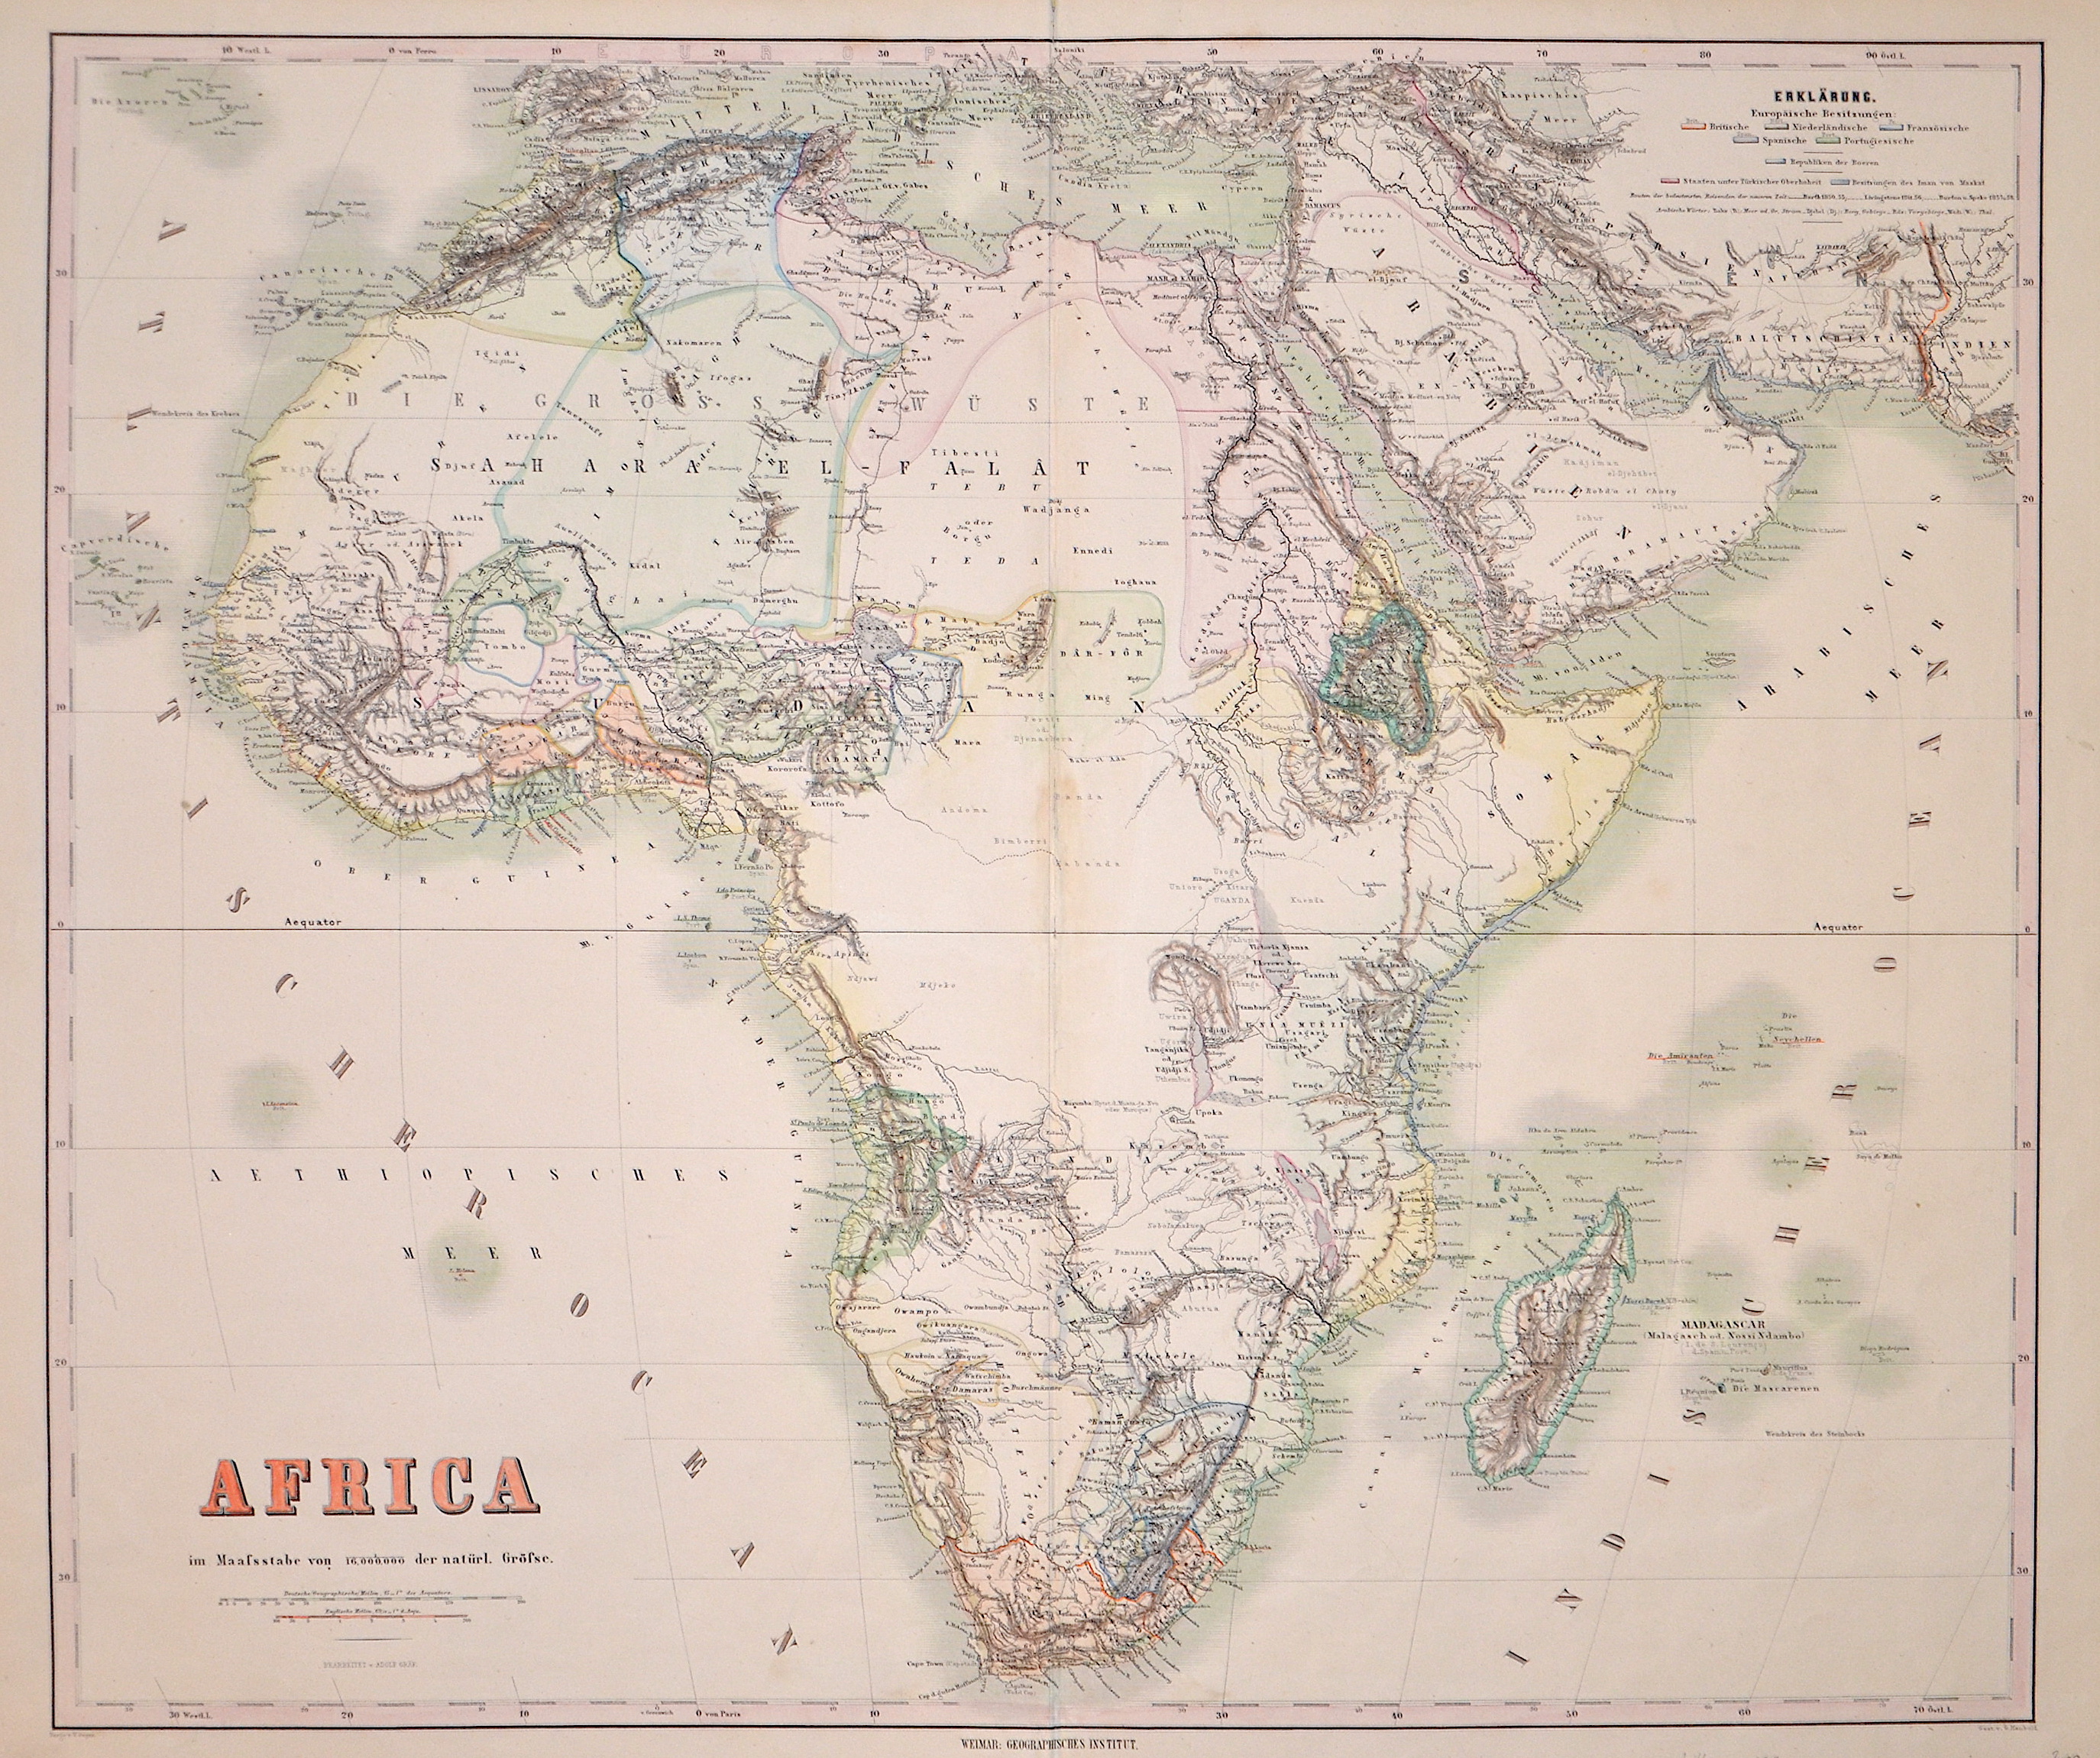 Haubold G. Africa im Maassstabe von 1/16.000.000 der natürl. Grösse.